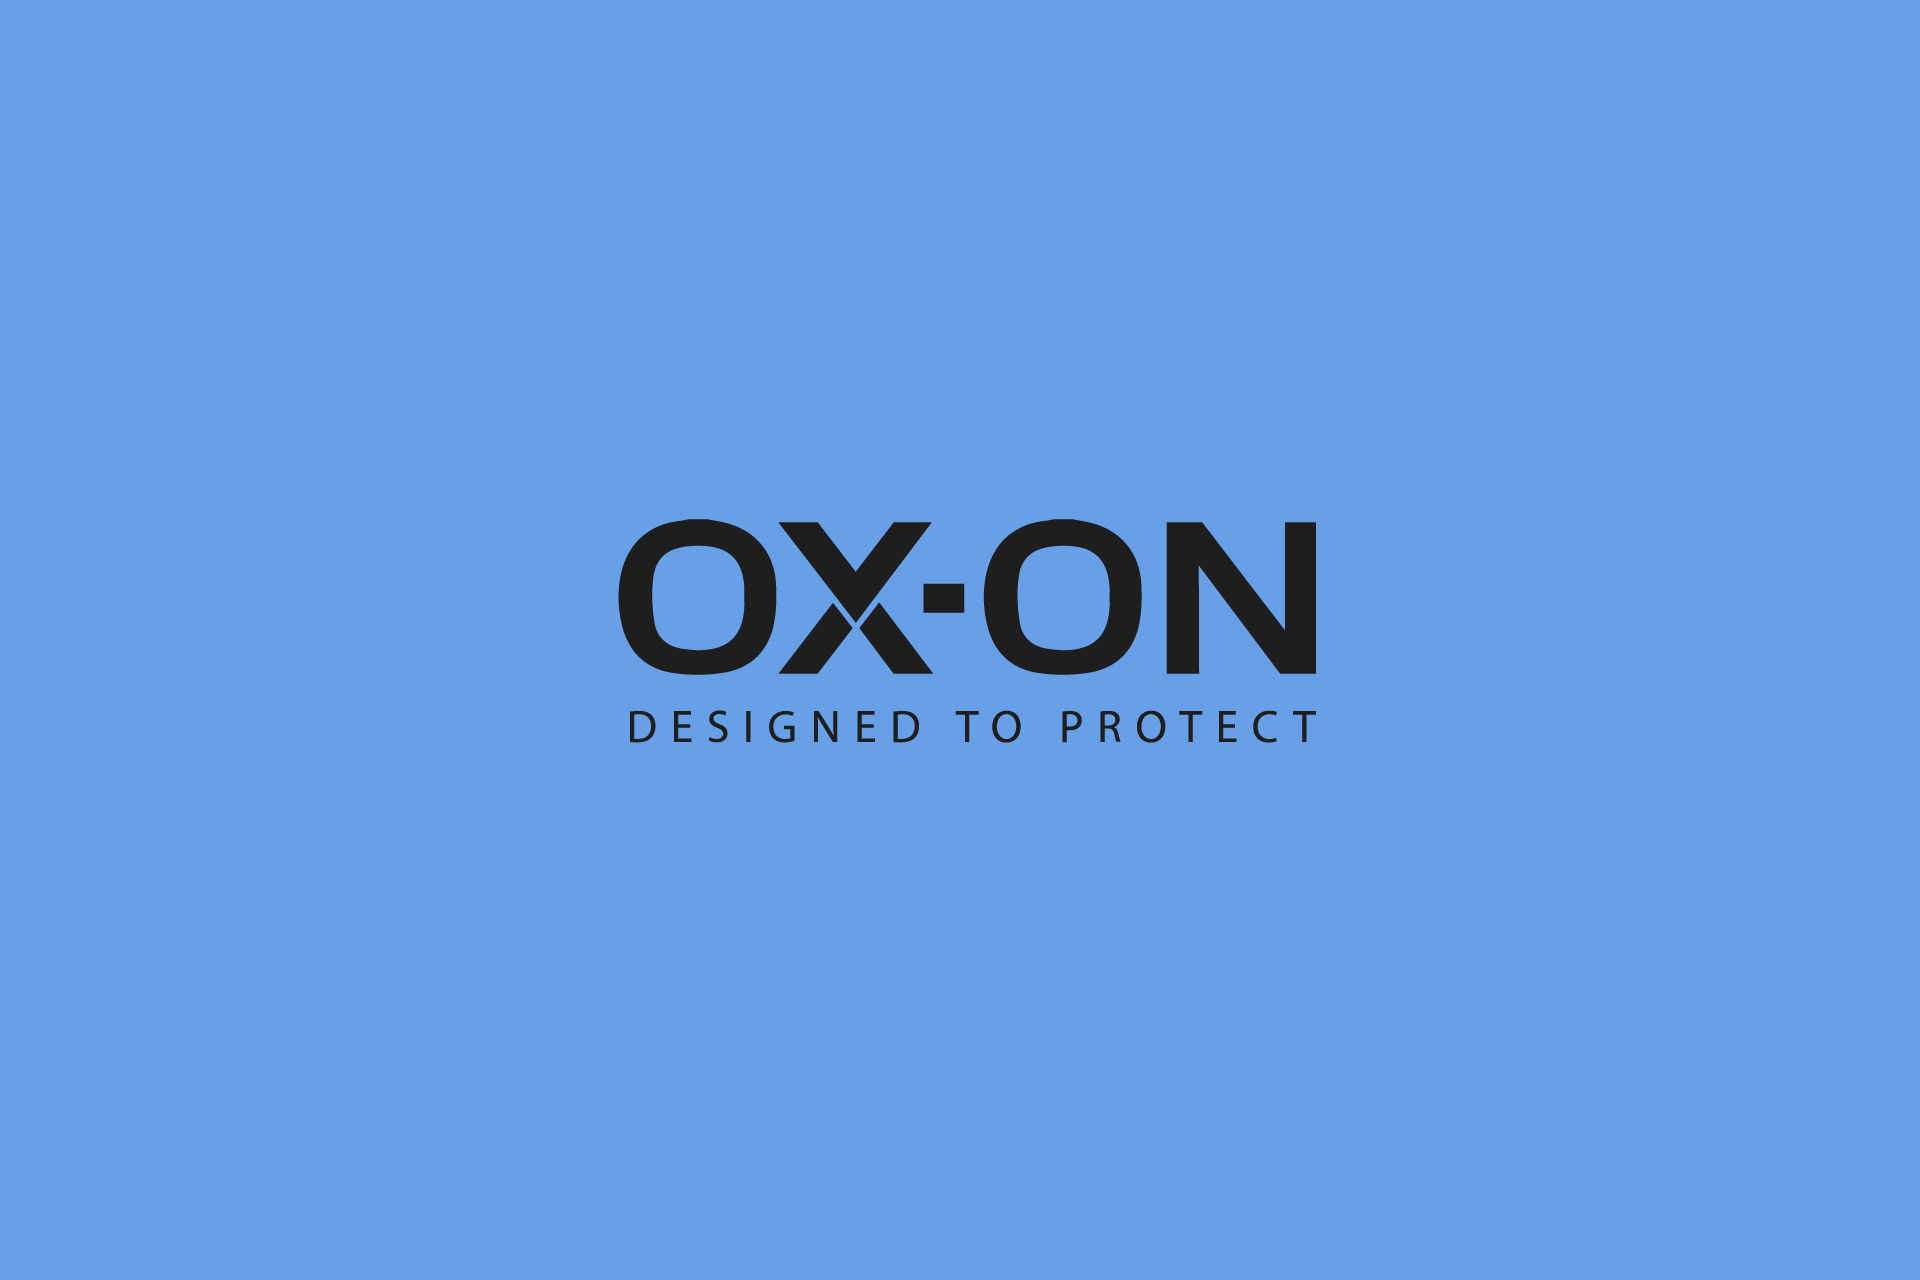 OX-ON Handschuhe und Ausrüstung